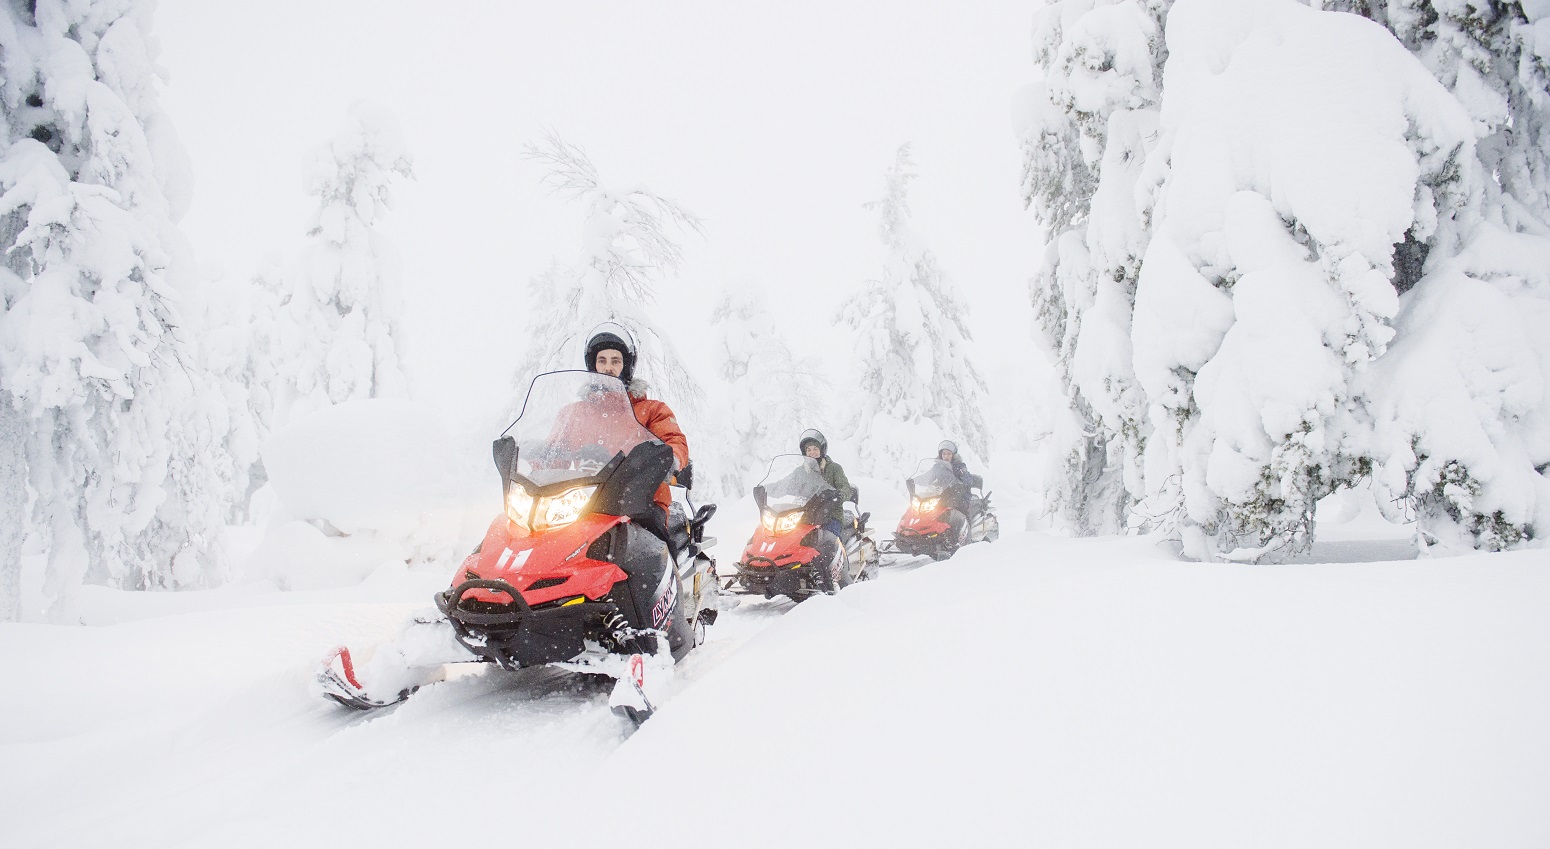 excursi9on motos nieves 2021